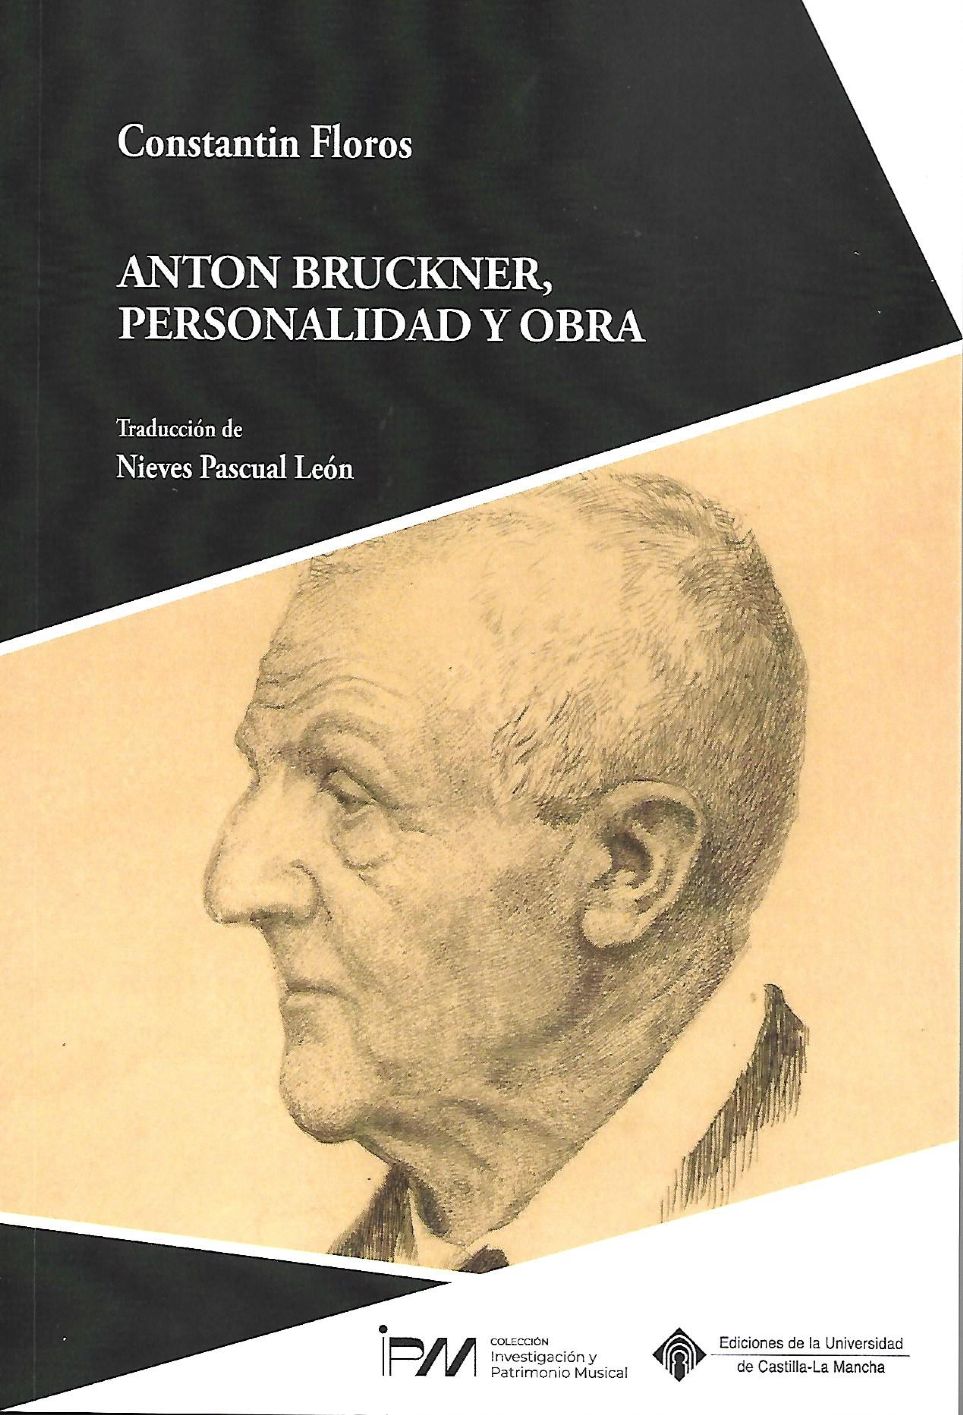 Crítica del libro Anton Bruckner, personalidad y obra de Constantin Floros